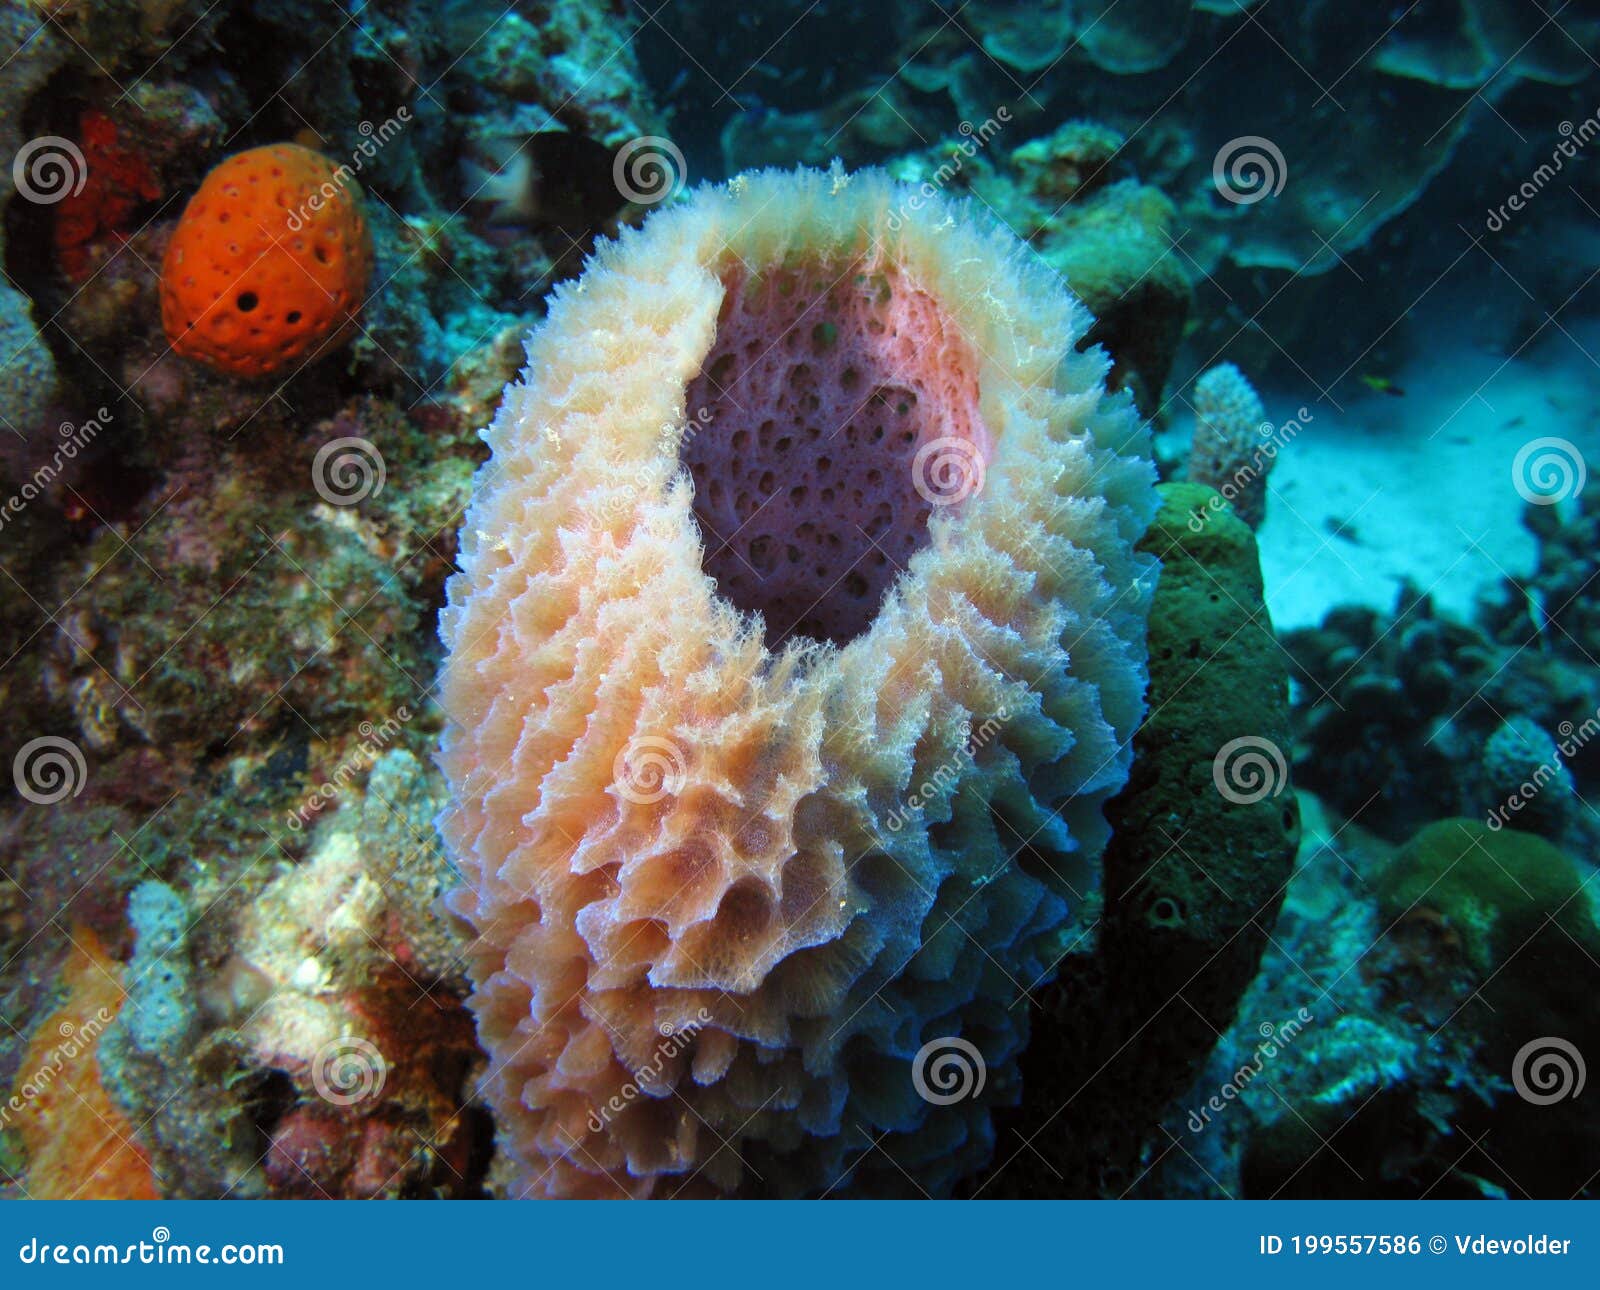 Grosse éponge En Mer Des Caraïbes Photo stock - Image du fond